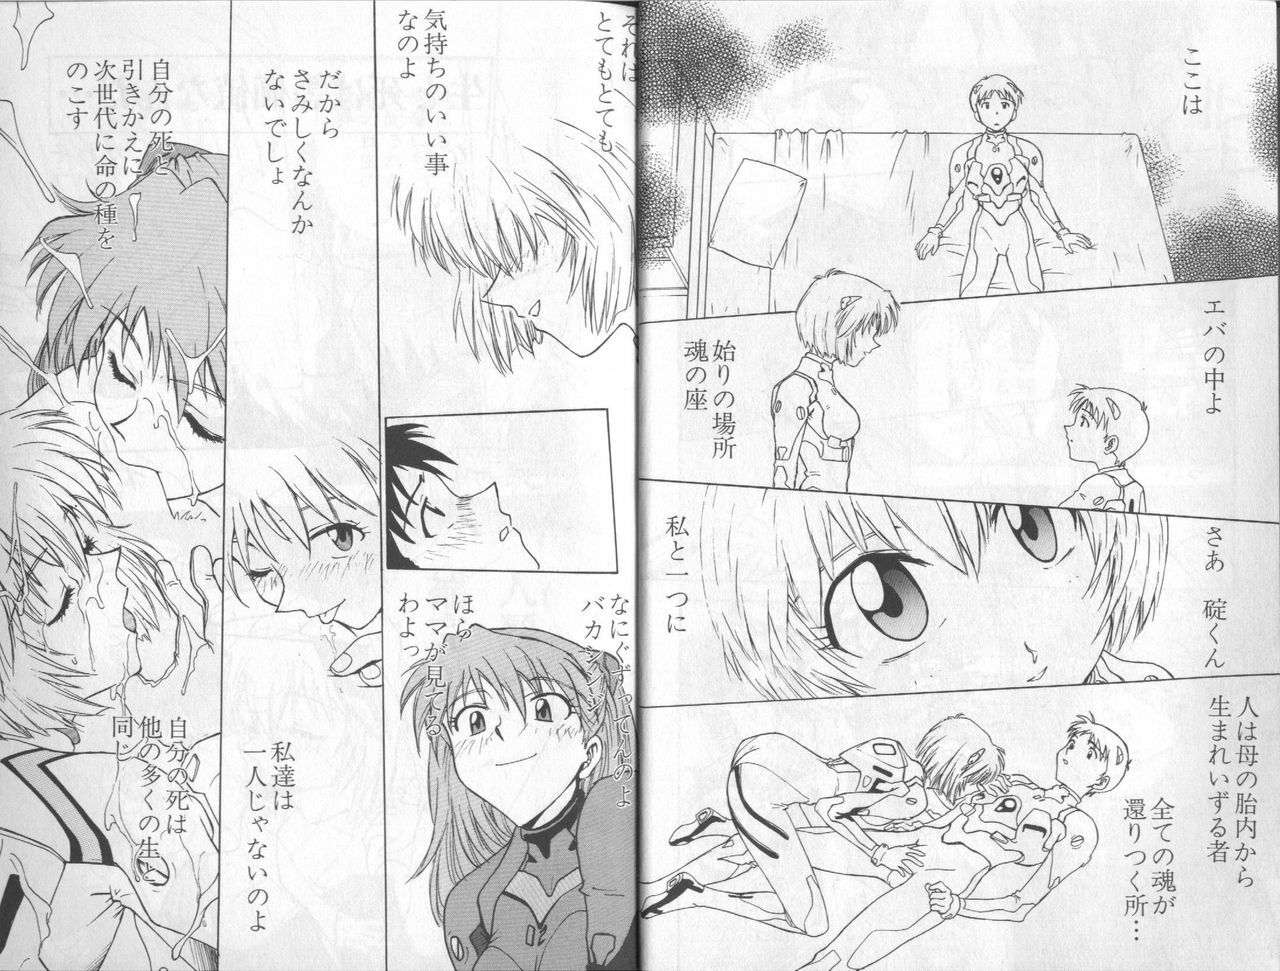 [Anthology] Shitsurakuen 6 | Paradise Lost 6 (Neon Genesis Evangelion) page 8 full